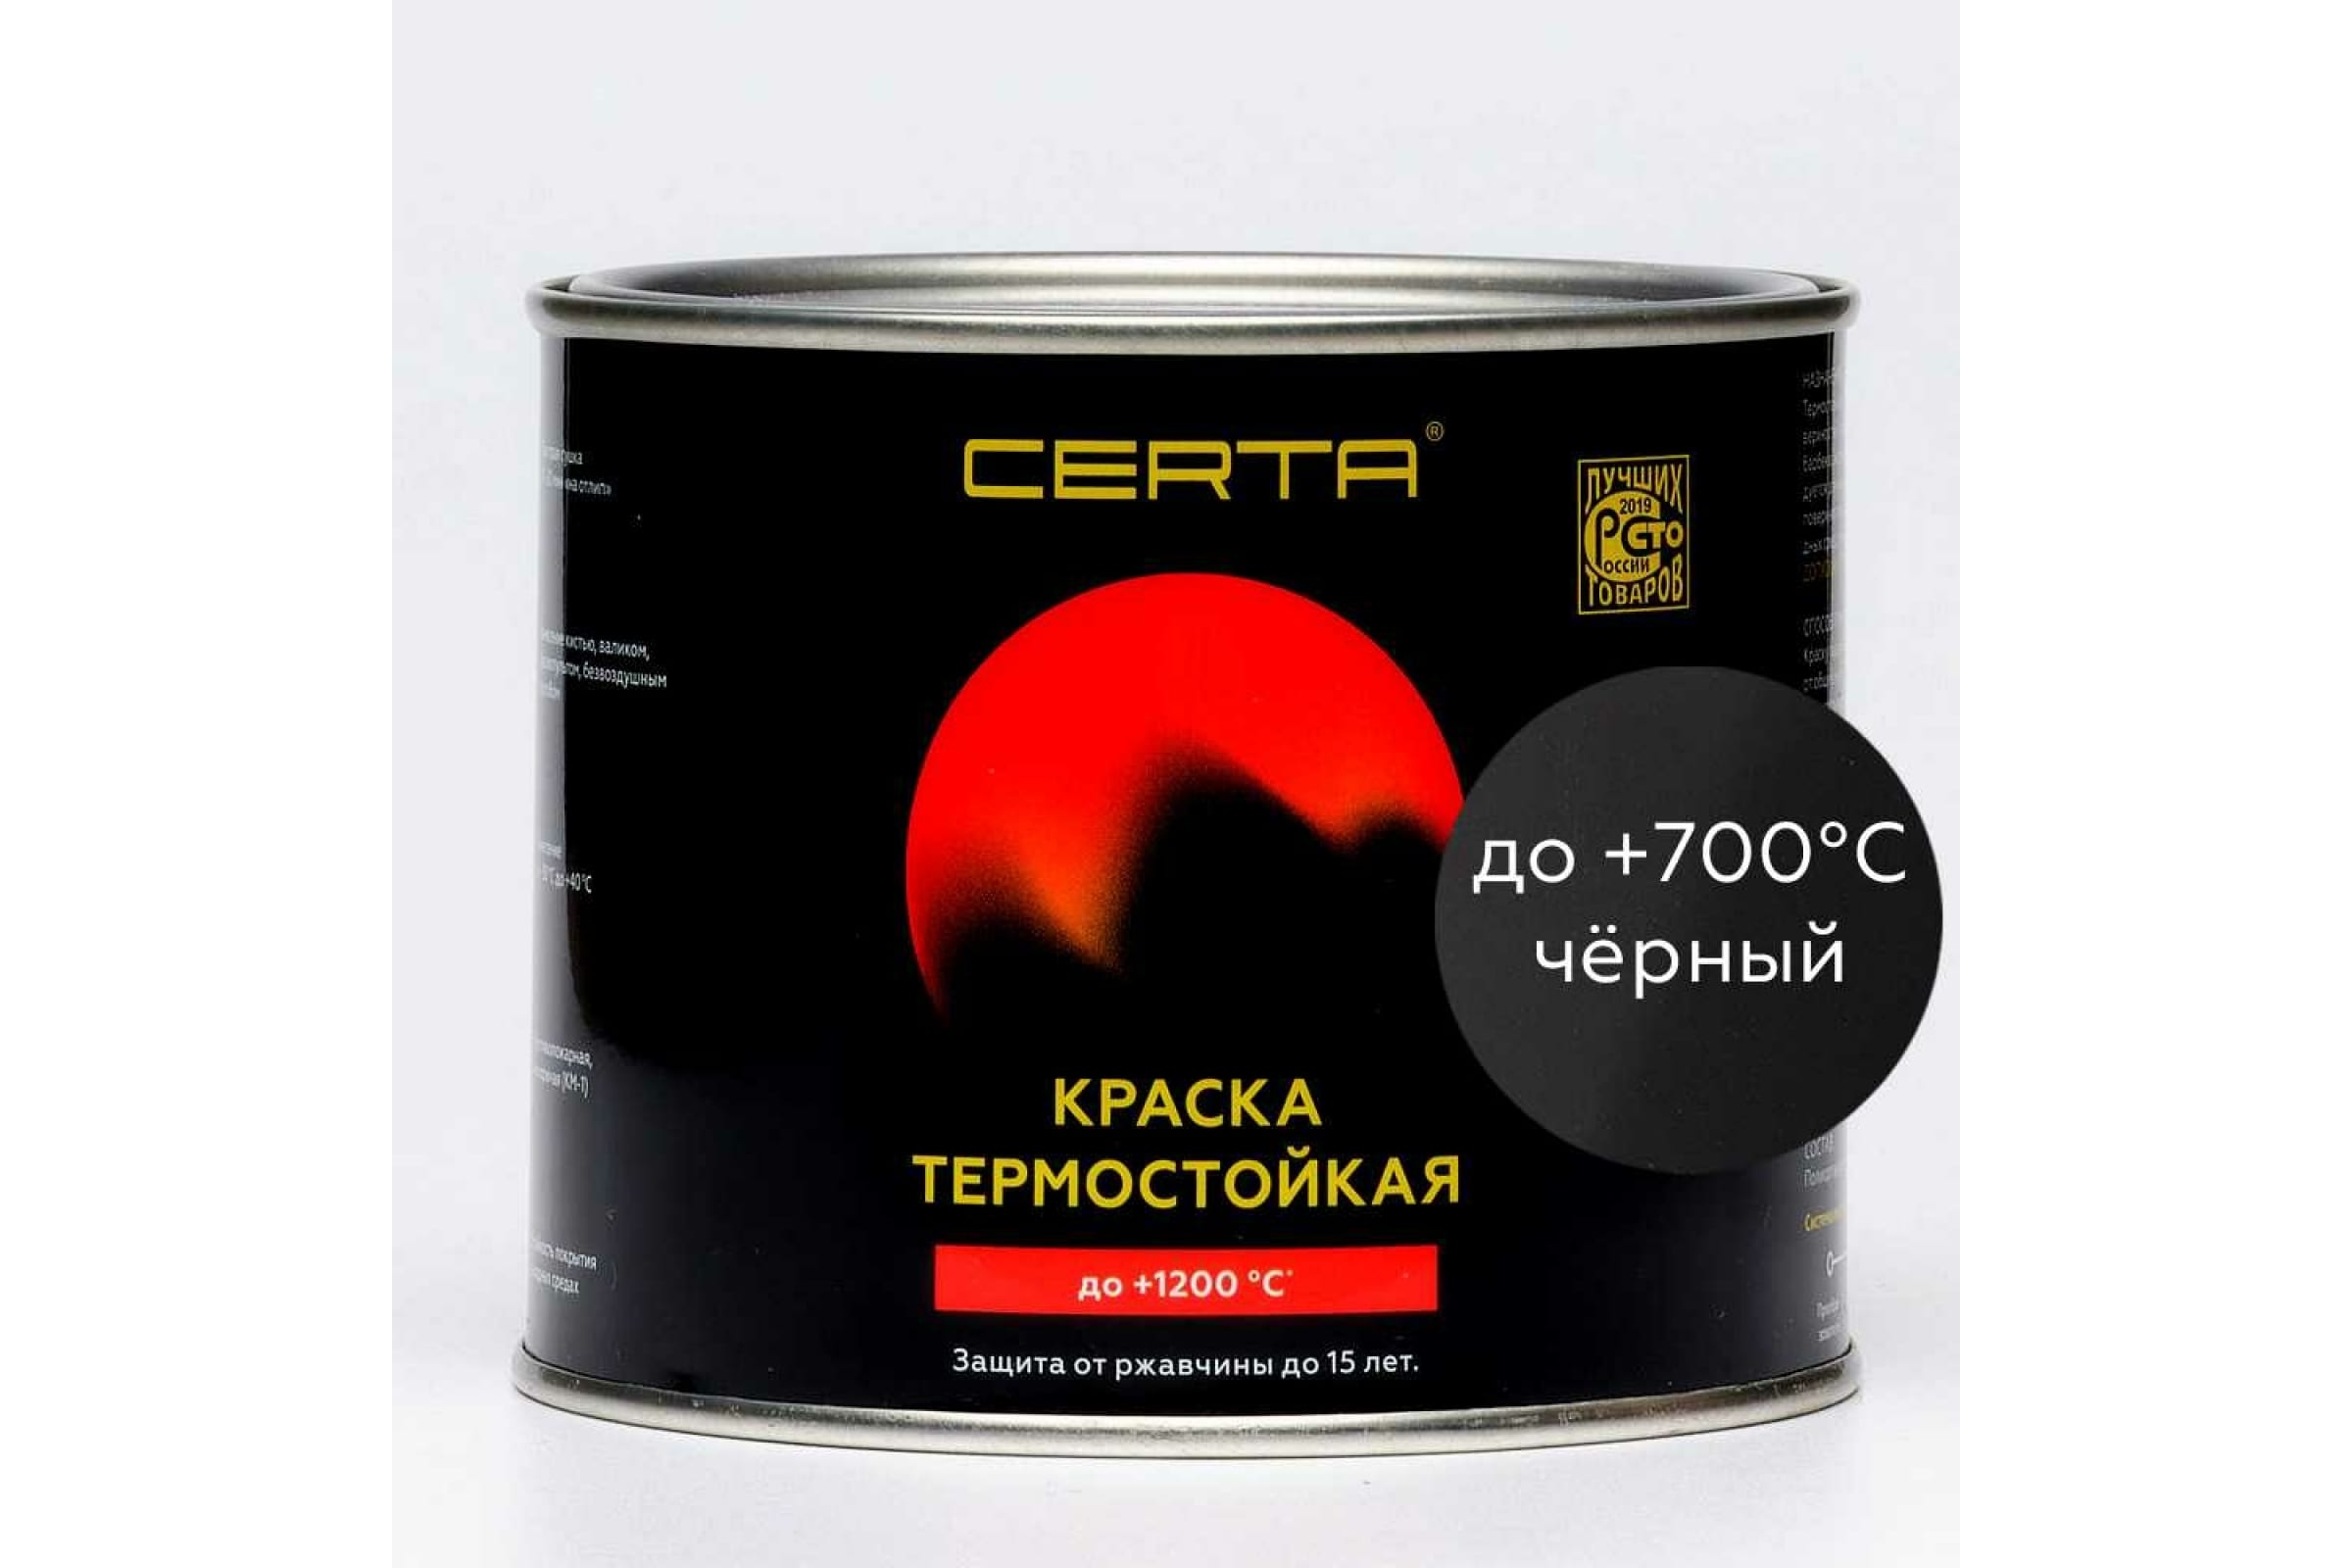 фото Certa эмаль термостойкая антикоррозионная до 700 с черный ral 9004 0,4кг cst00037